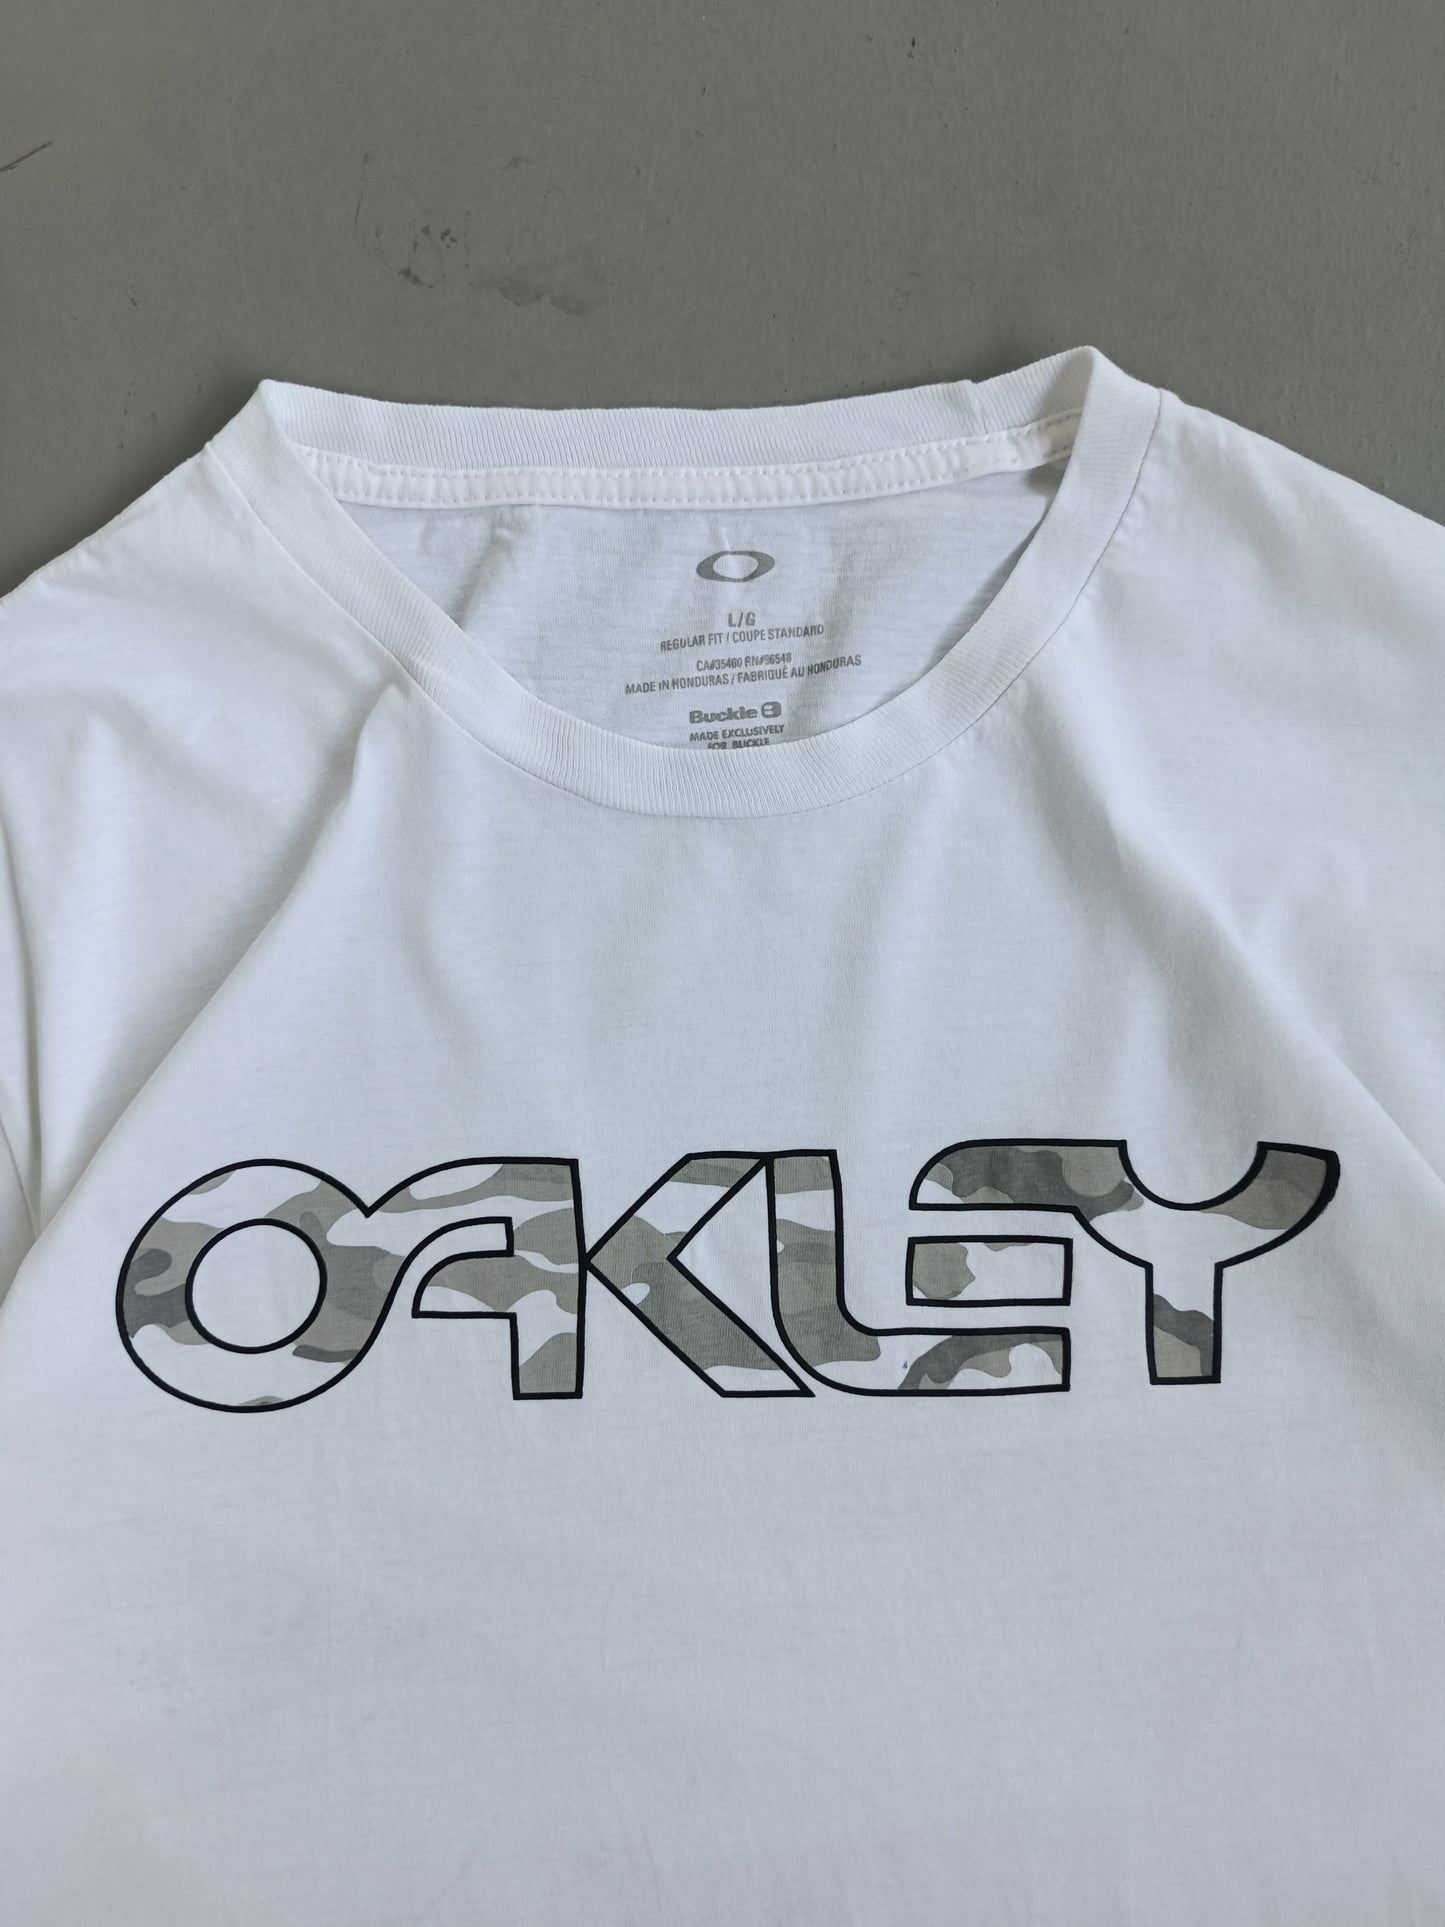 Oakley - L